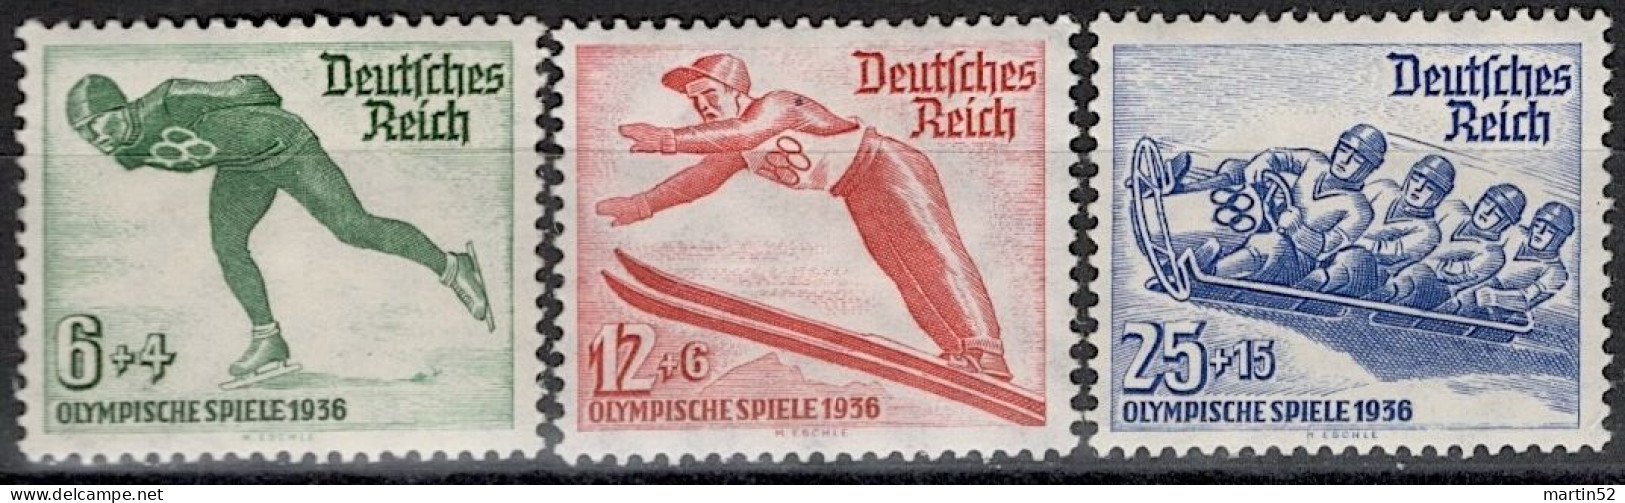 Deutsches Reich Allemagne Germany 1936: Winter-Olympiade Garmisch-Partenkirchen  "Skate Saut Bob" Michel-N° 600-602 * - Inverno1936: Garmisch-Partenkirchen